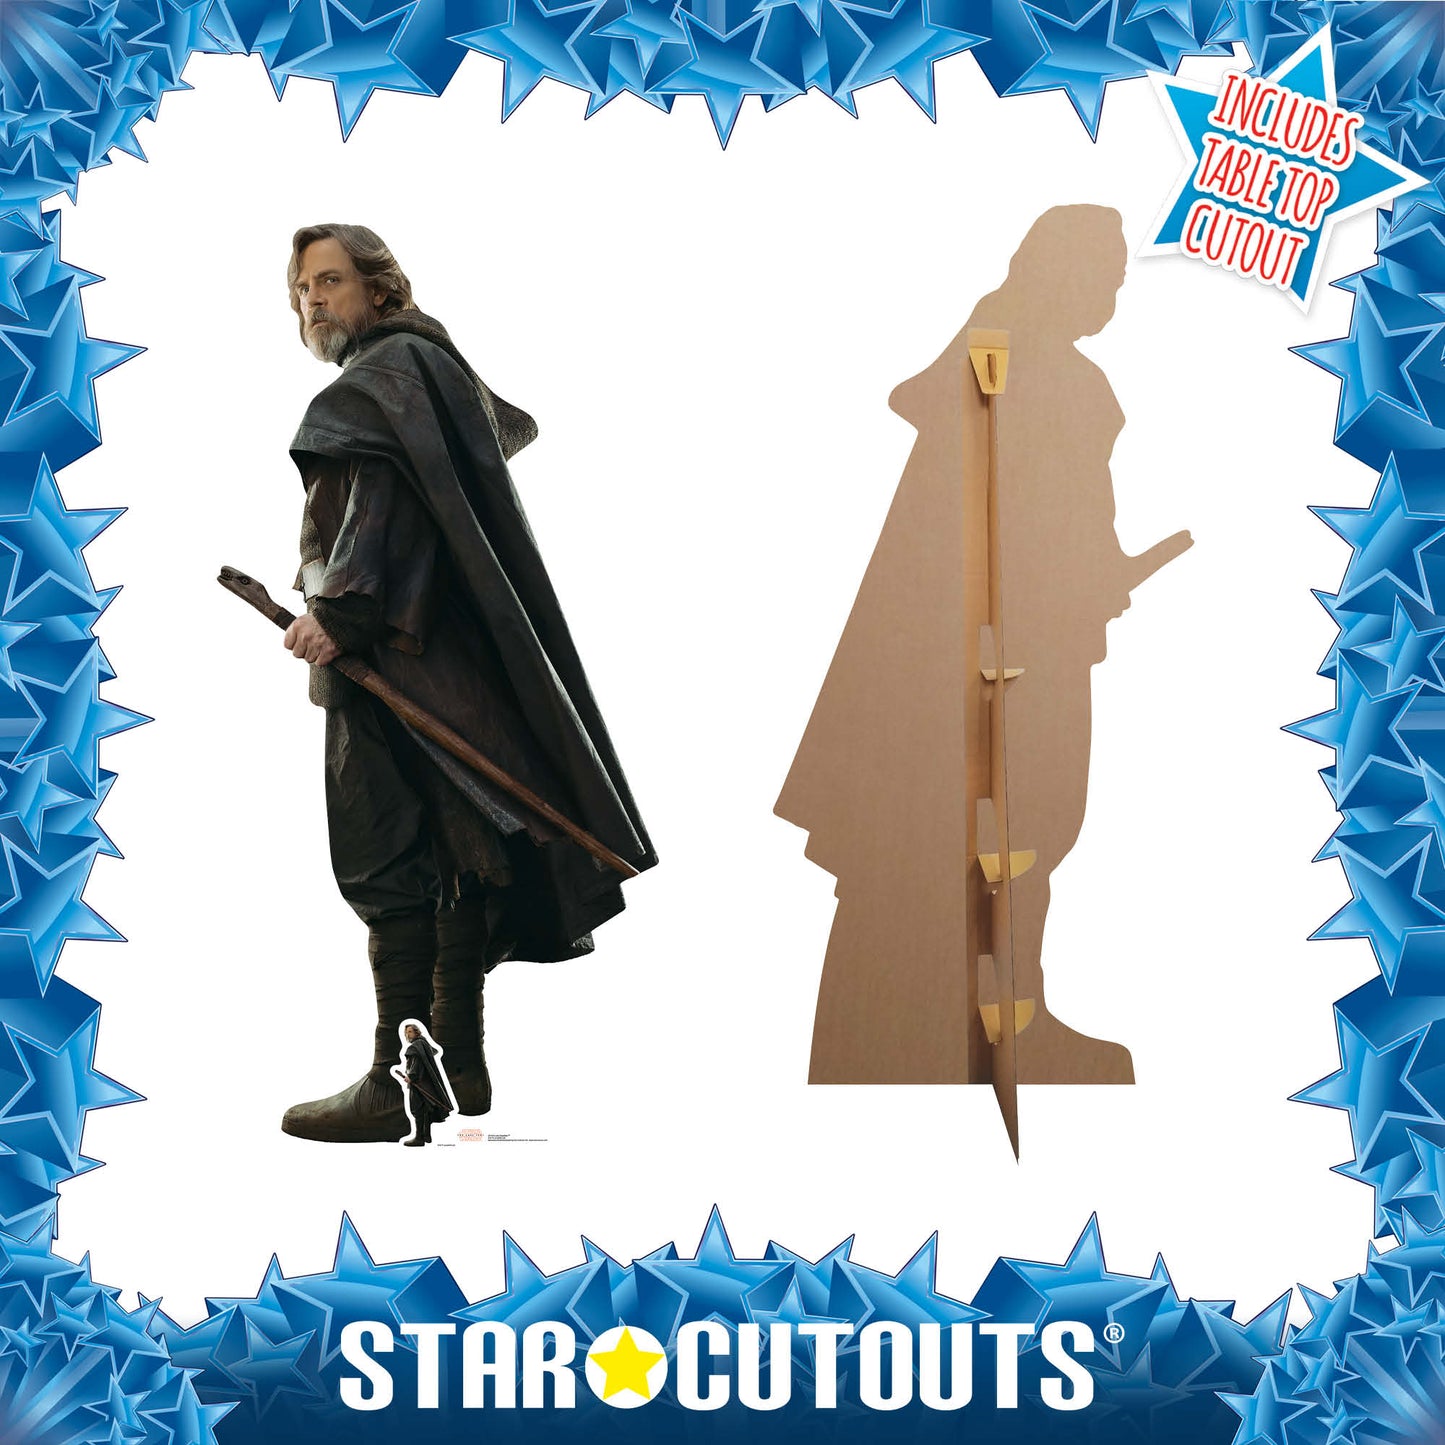 Luke Skywalker The Last Jedi Cardboard Cut Out Height 178cm